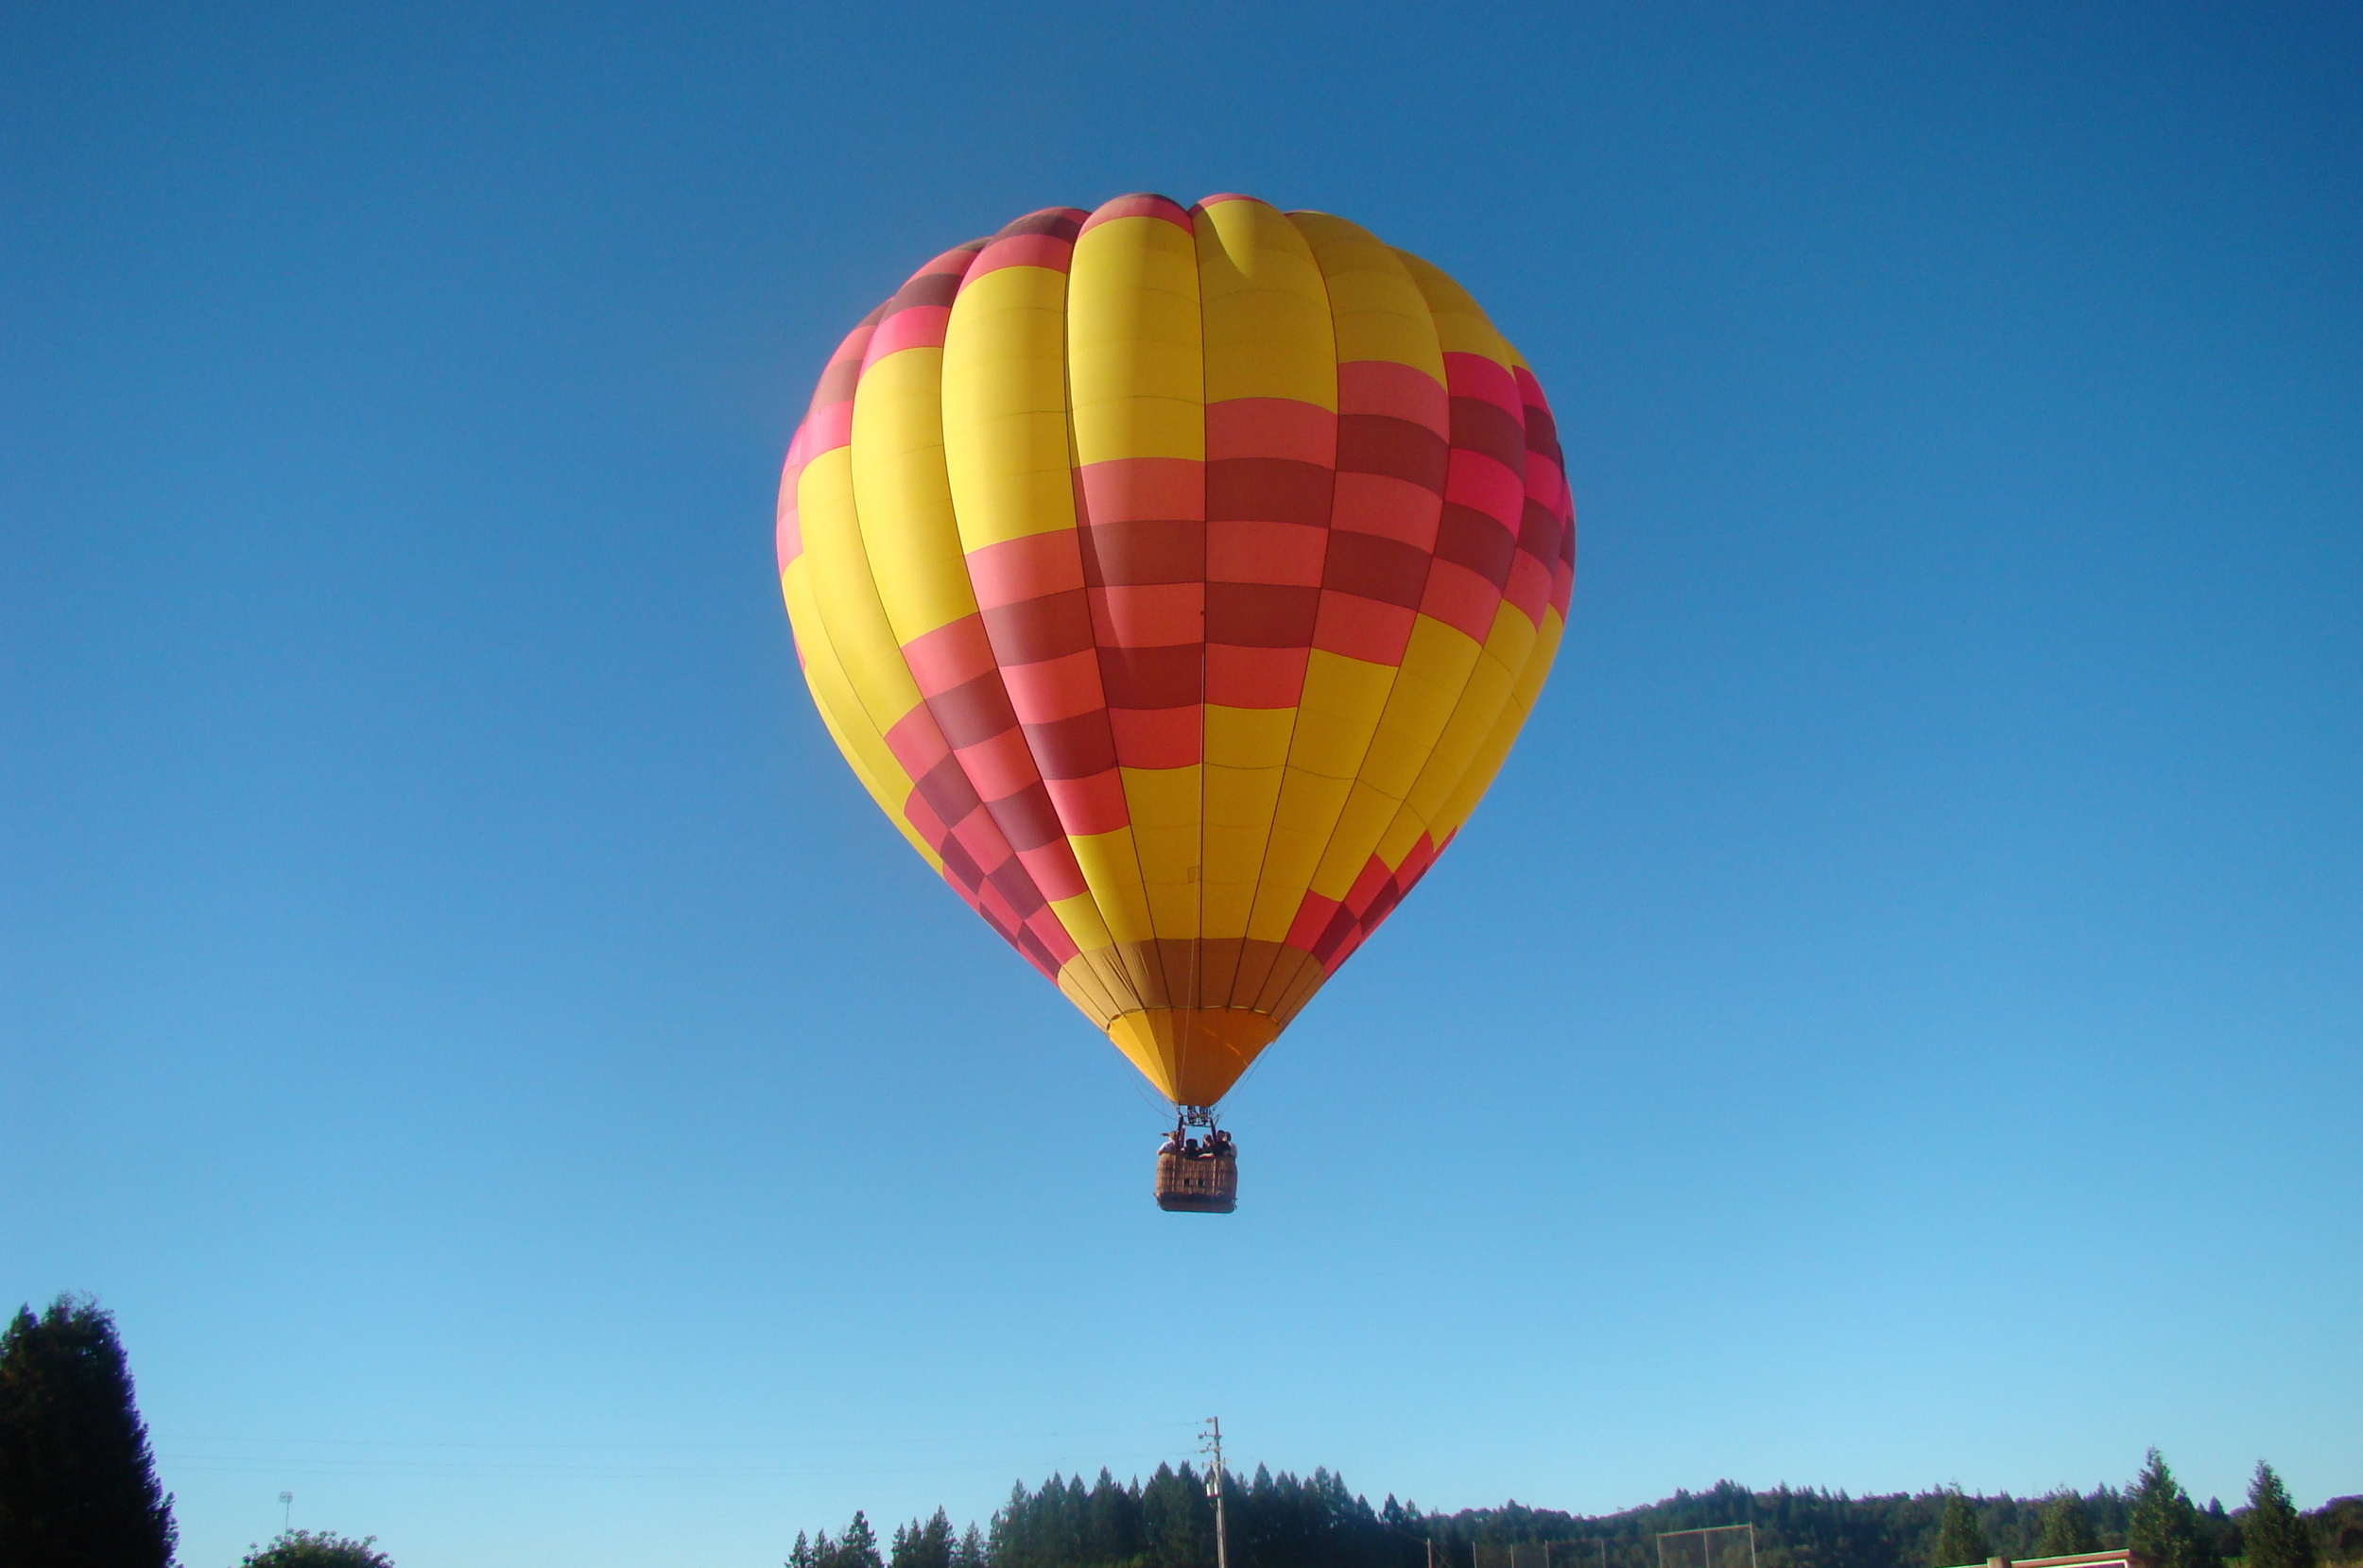  Hot air balloon ride in California. 